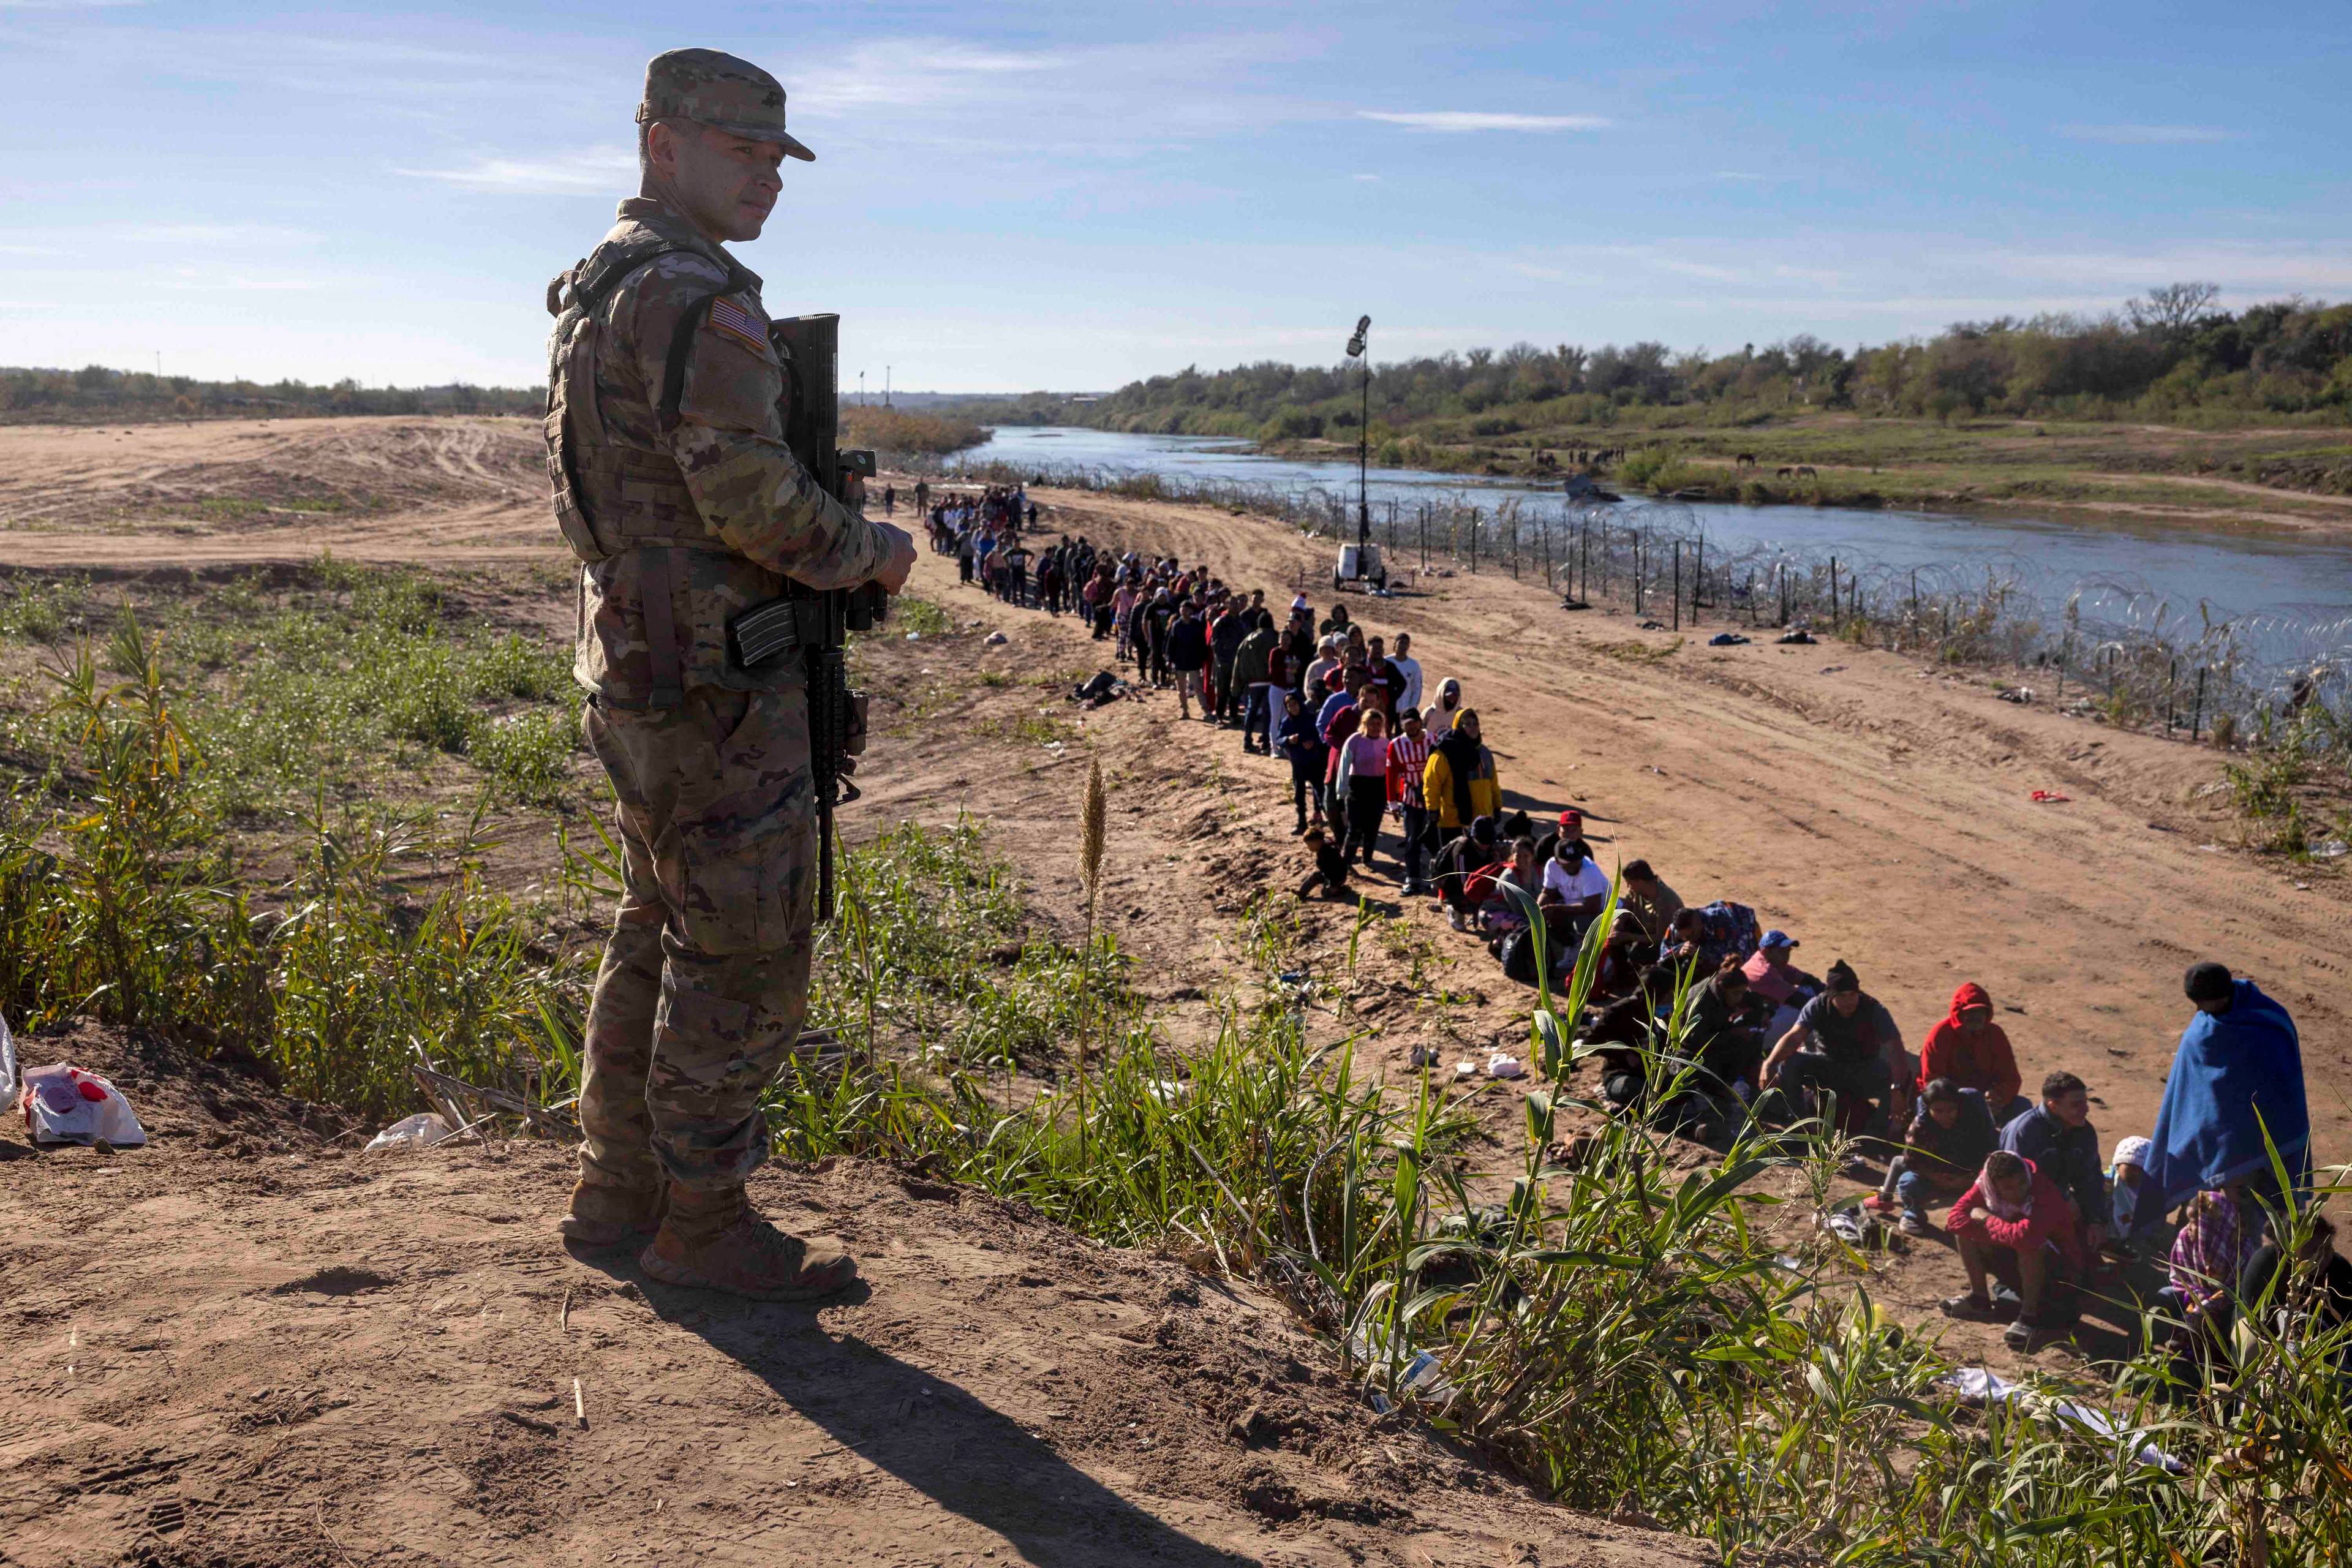 Strażnik grabiczny patrzy na osoby przekraczające granicę USA z Meksykiem